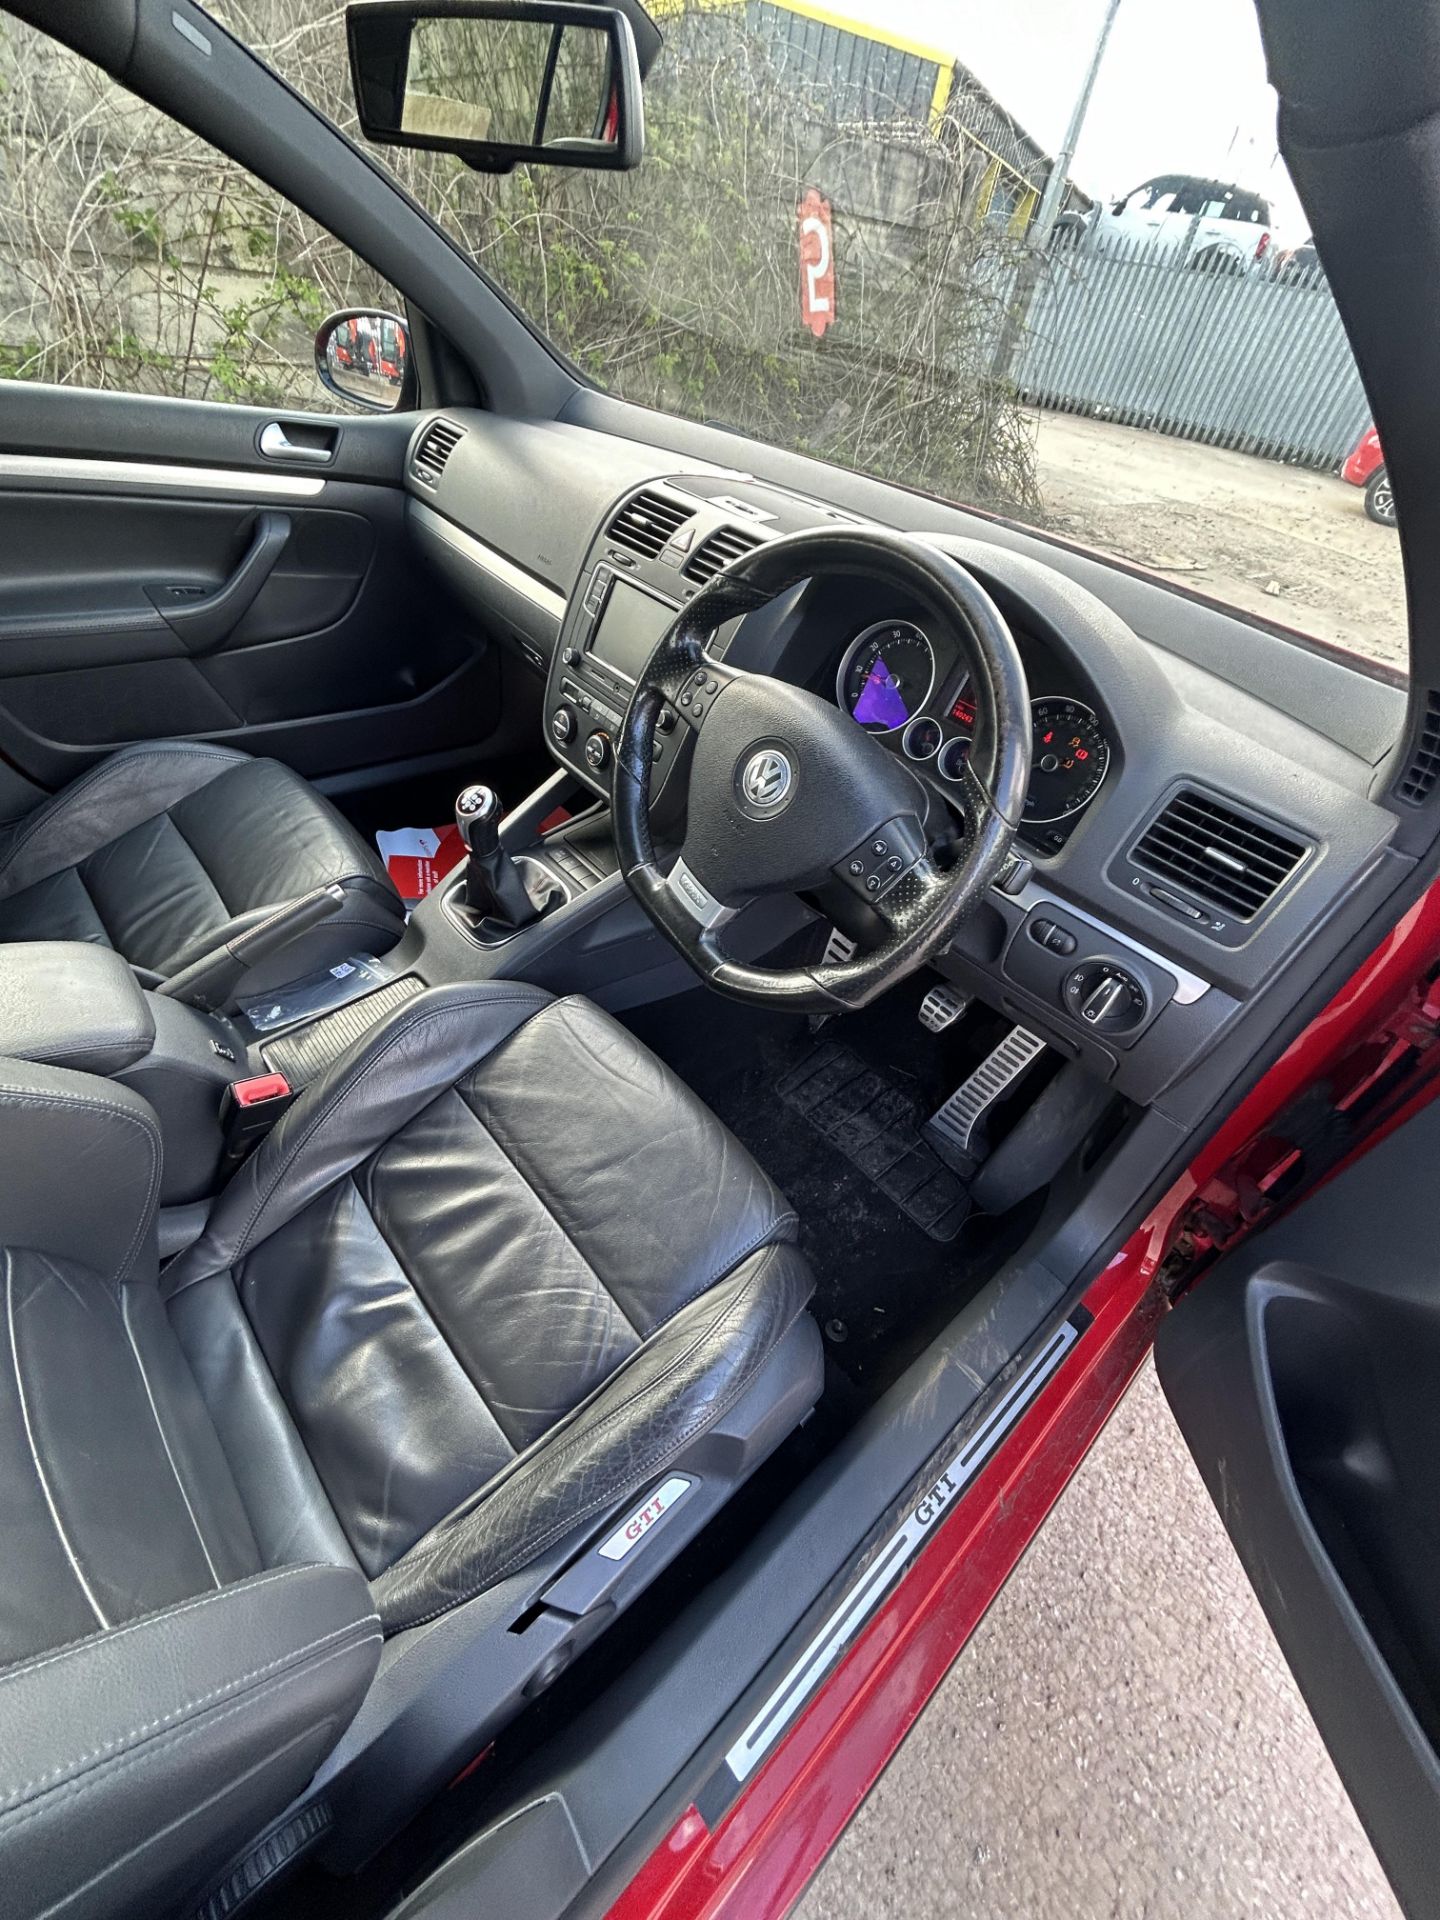 Volkswagen Golf GTI Petrol 5 Door Hatchback | LS08 DBU | 140,243 Miles - Image 10 of 13